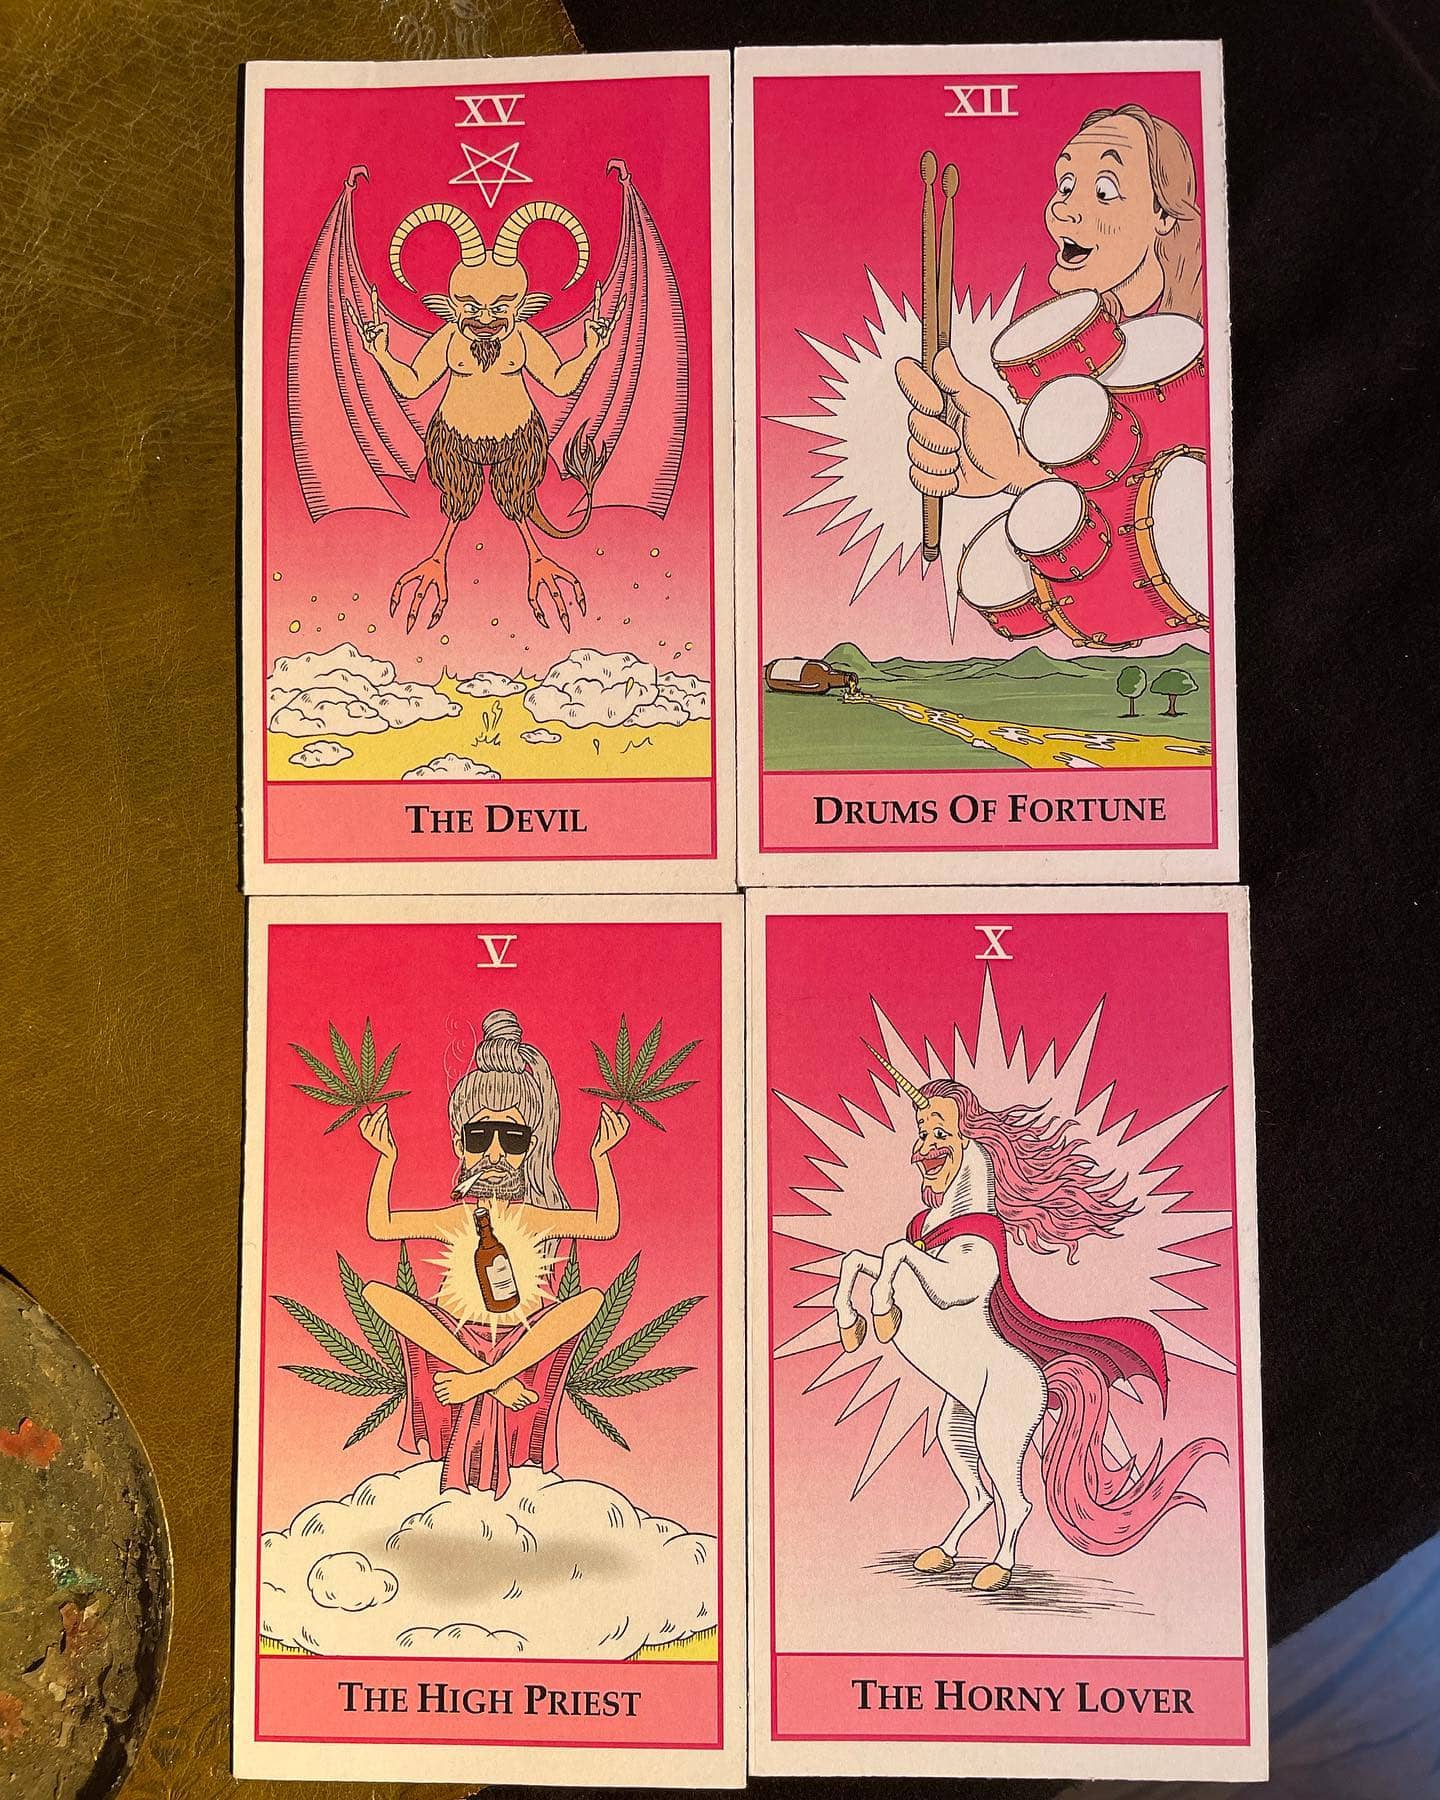 Instagram:Diese wunderschönen „Tarot-Karten“ hat uns @andre_cartoons für das Einhorn-Video gezeichnet - wir mögen sie sehr! Was si